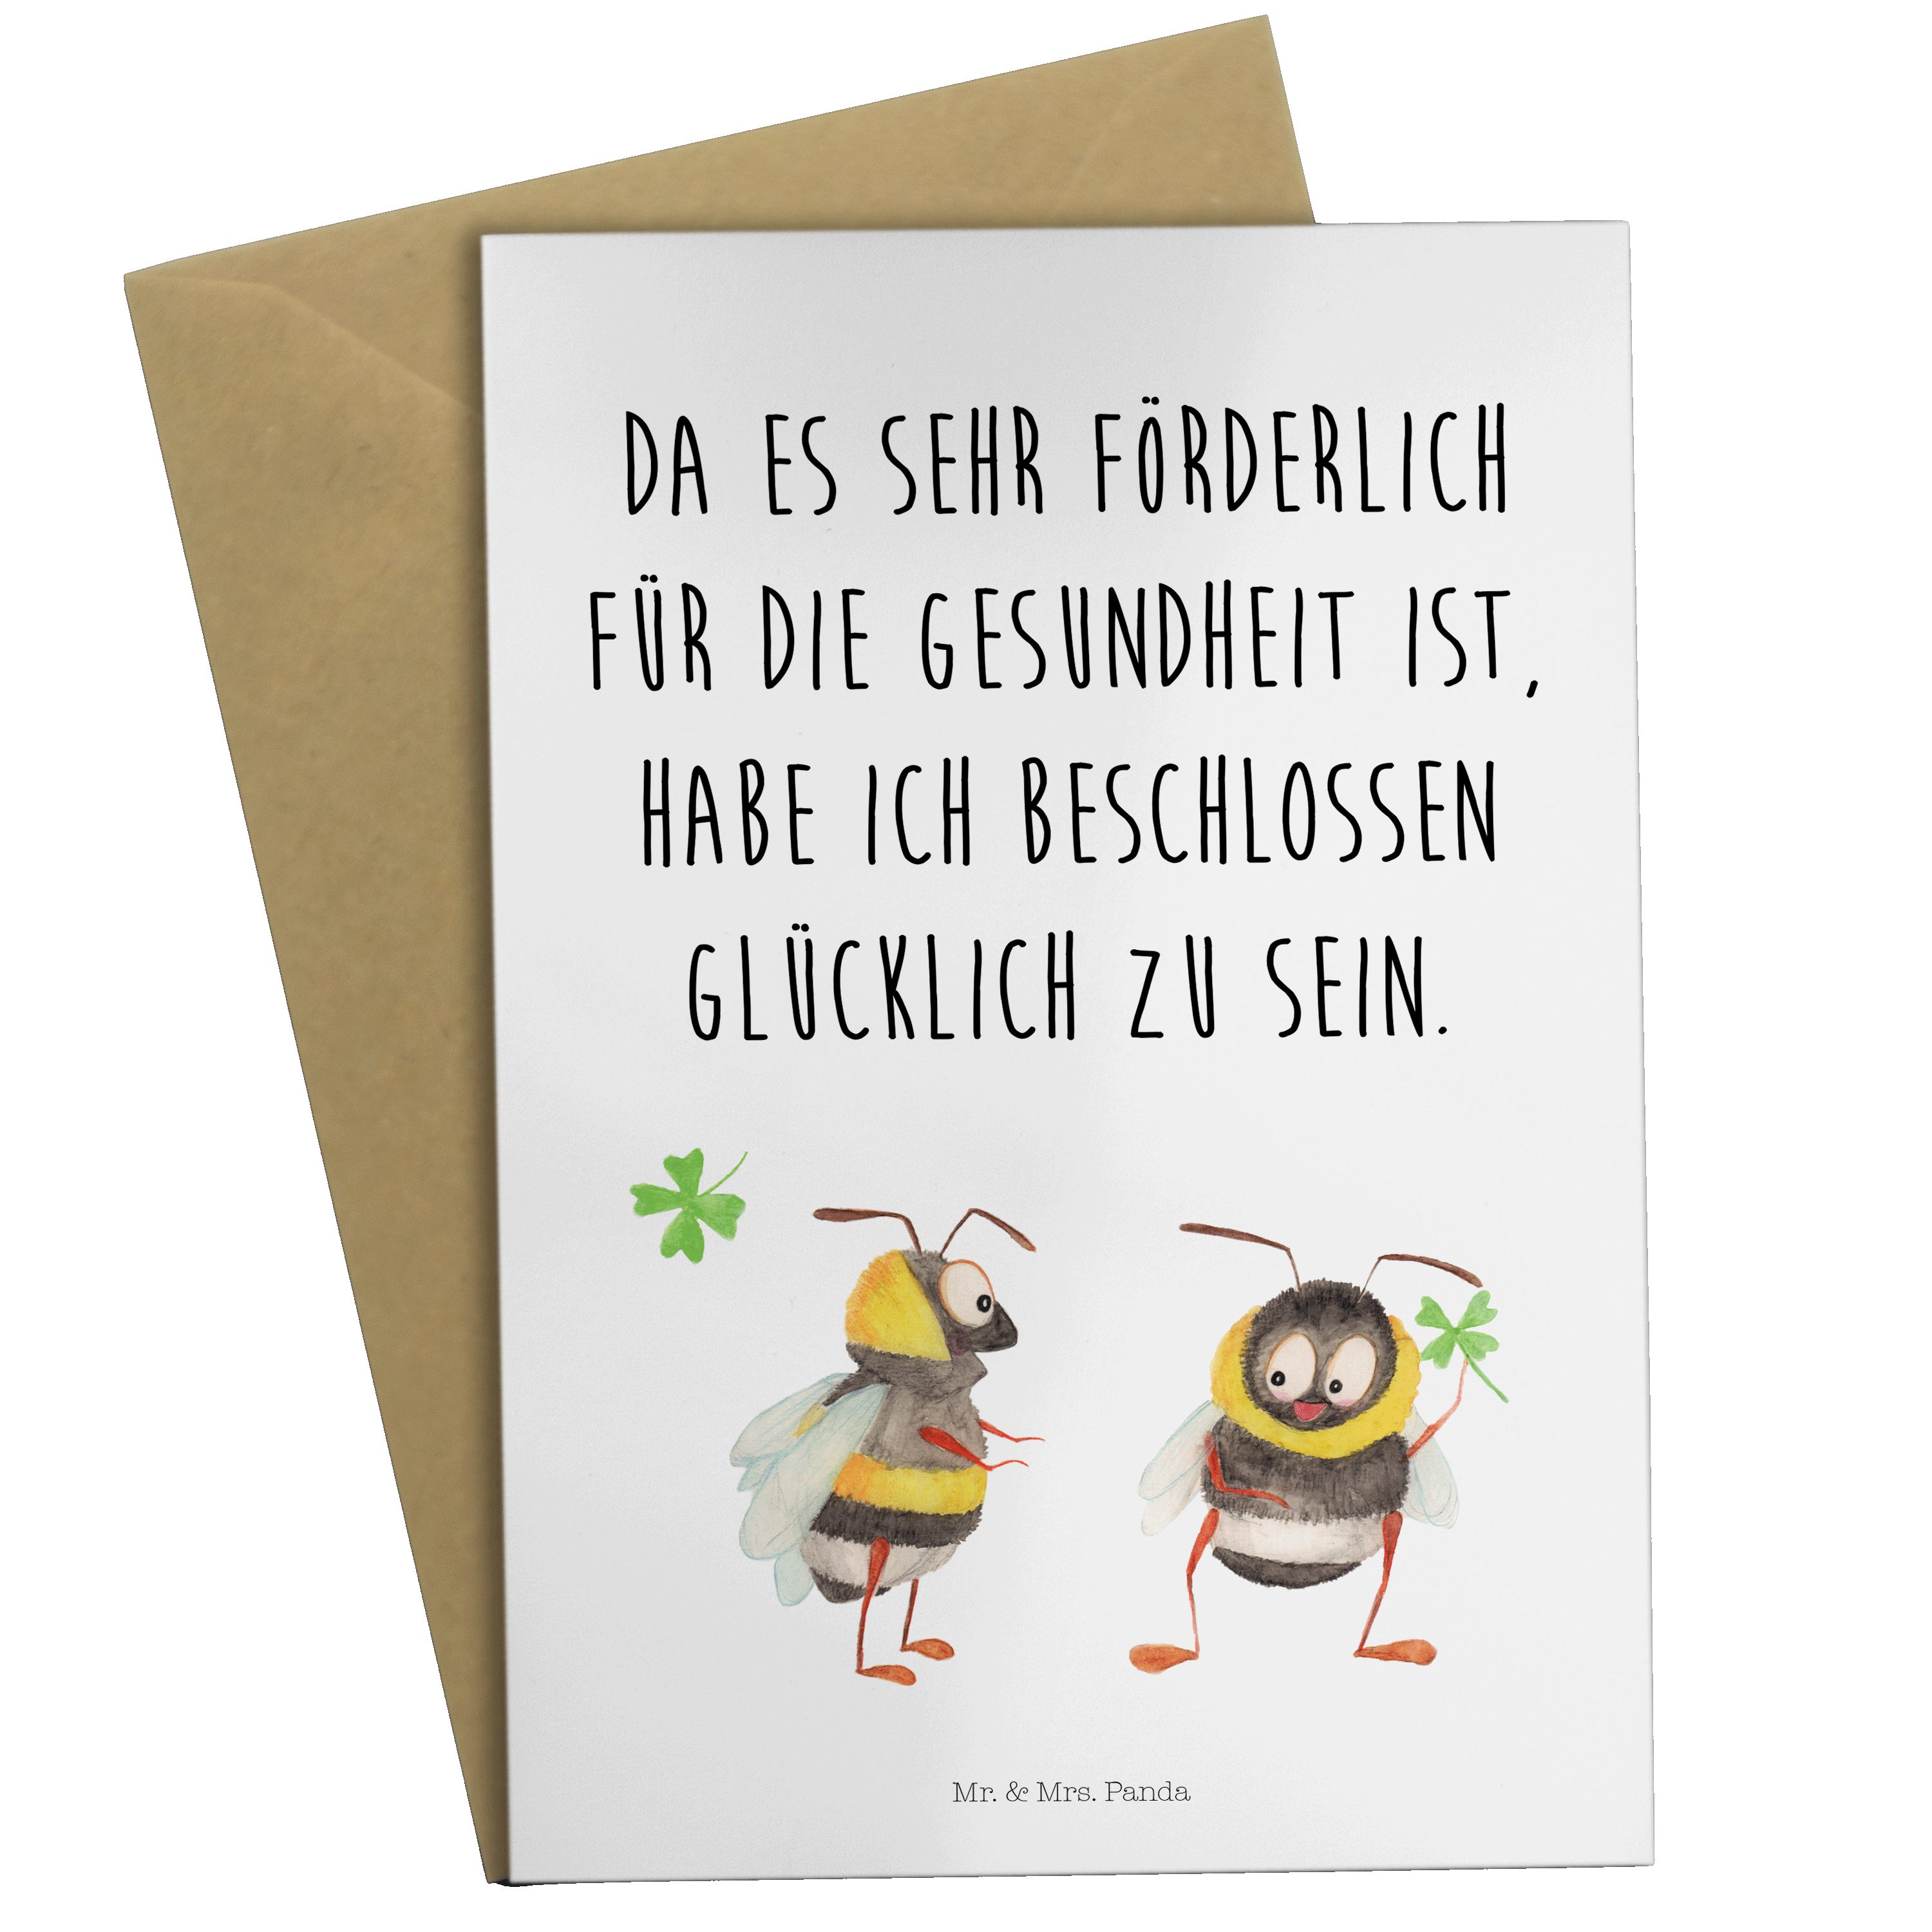 Mr. & Mrs. Weiß - Hummeln Glückwunschkarte, Panda Kleeblatt - Grußkarte Einladungs mit Geschenk